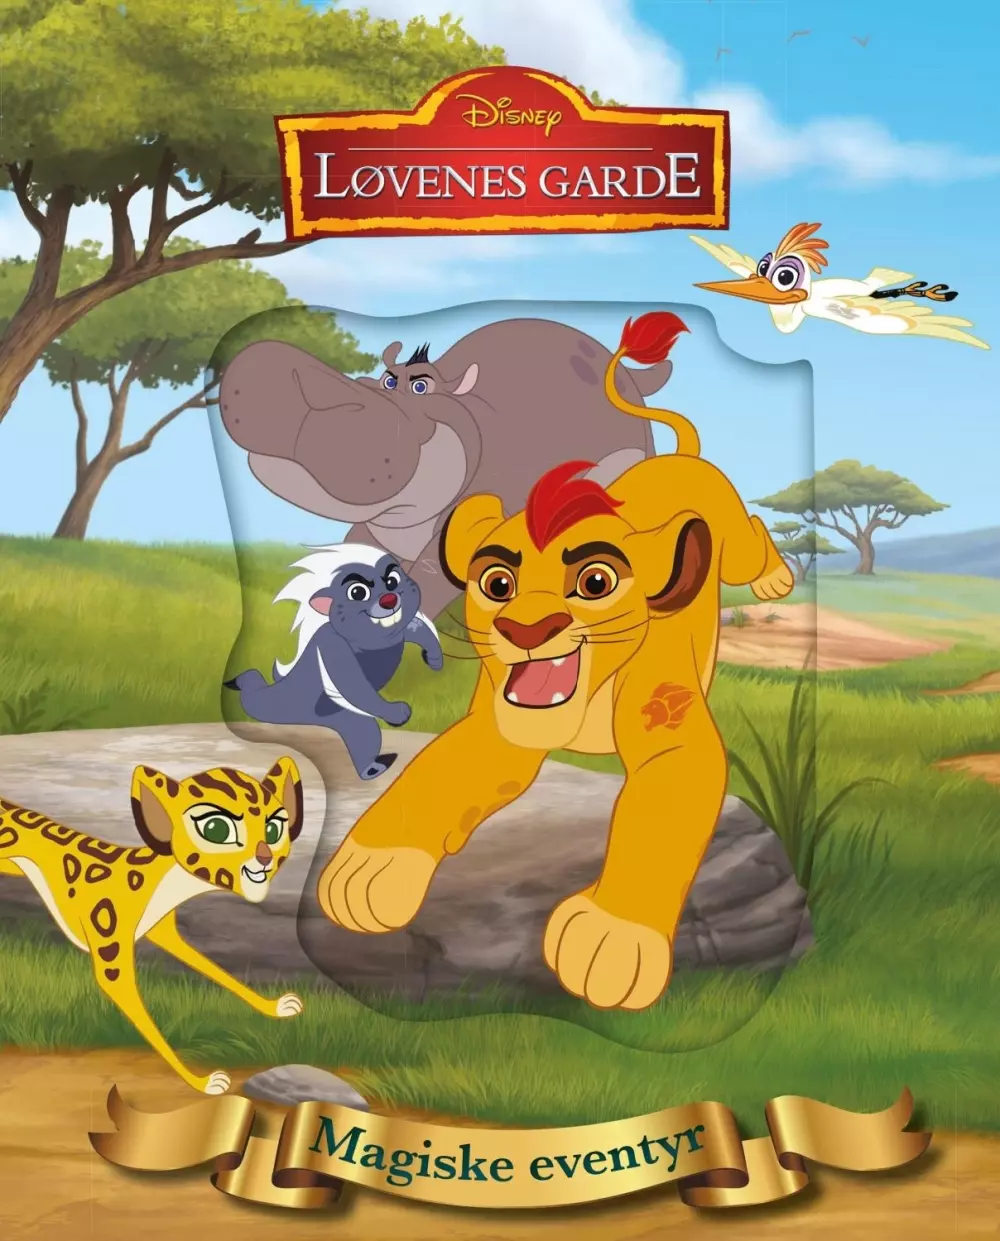 Disney magiske eventyr: Løvenes garde, 9788231610519, Barnebøker, Disney fortelling